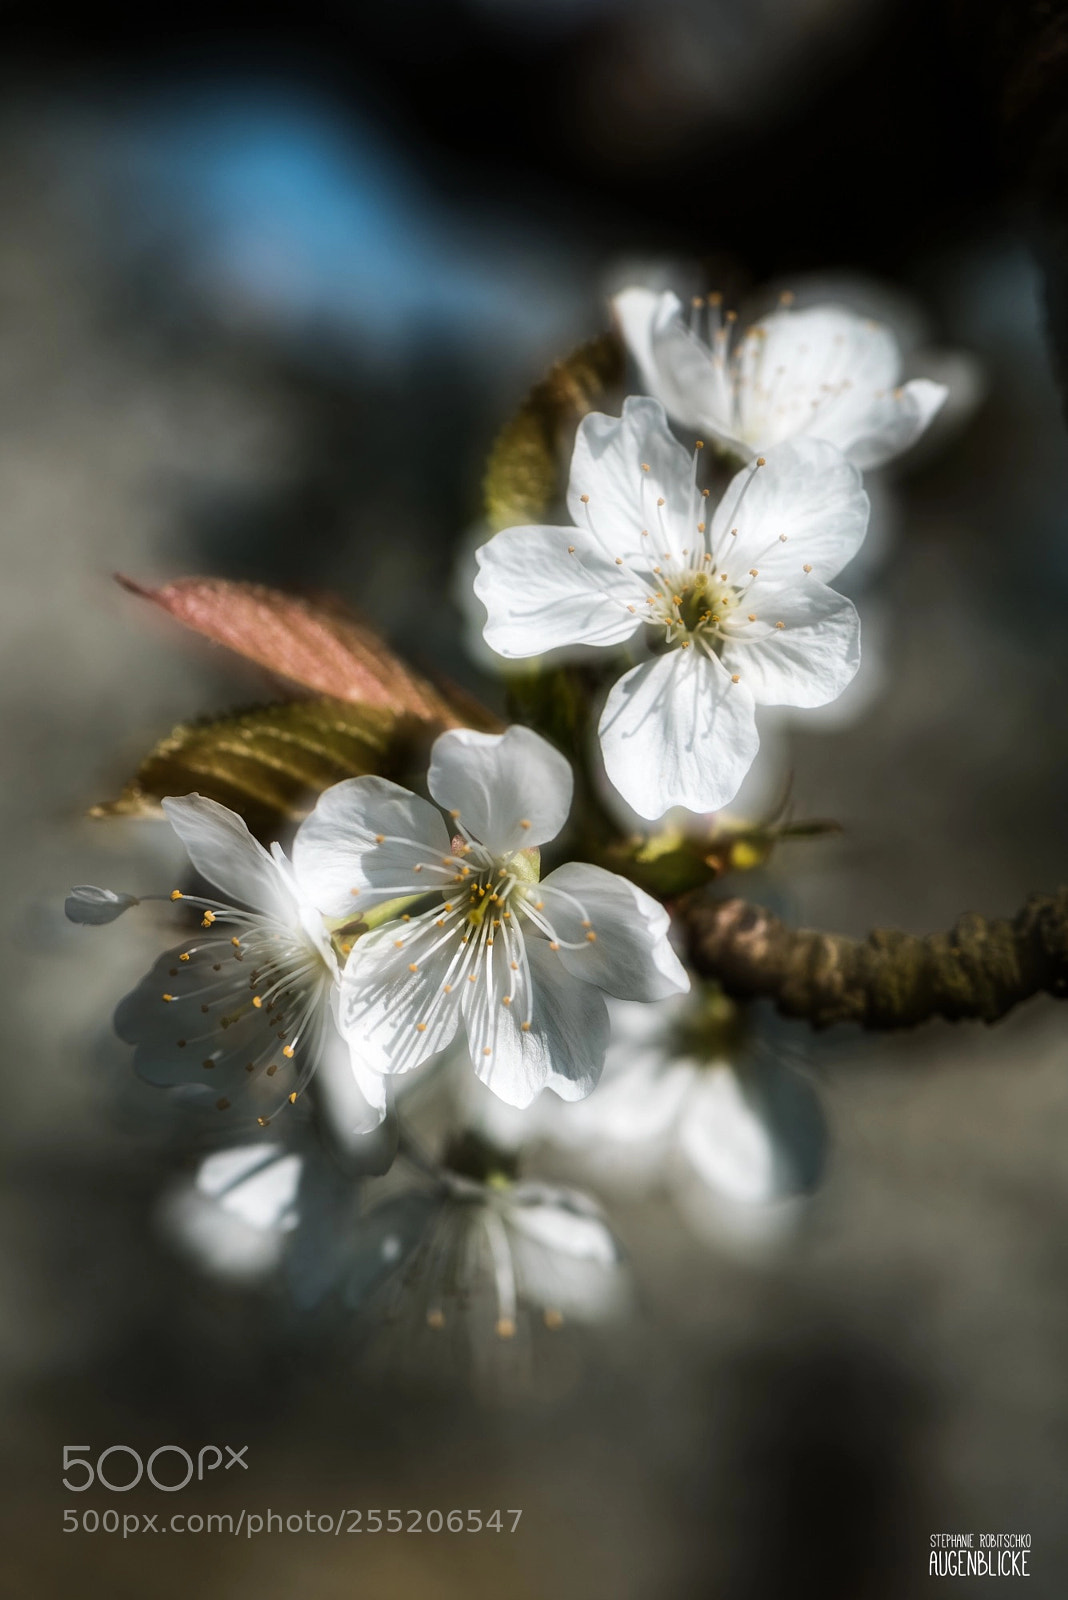 Nikon D750 sample photo. Cherry blossom i photography